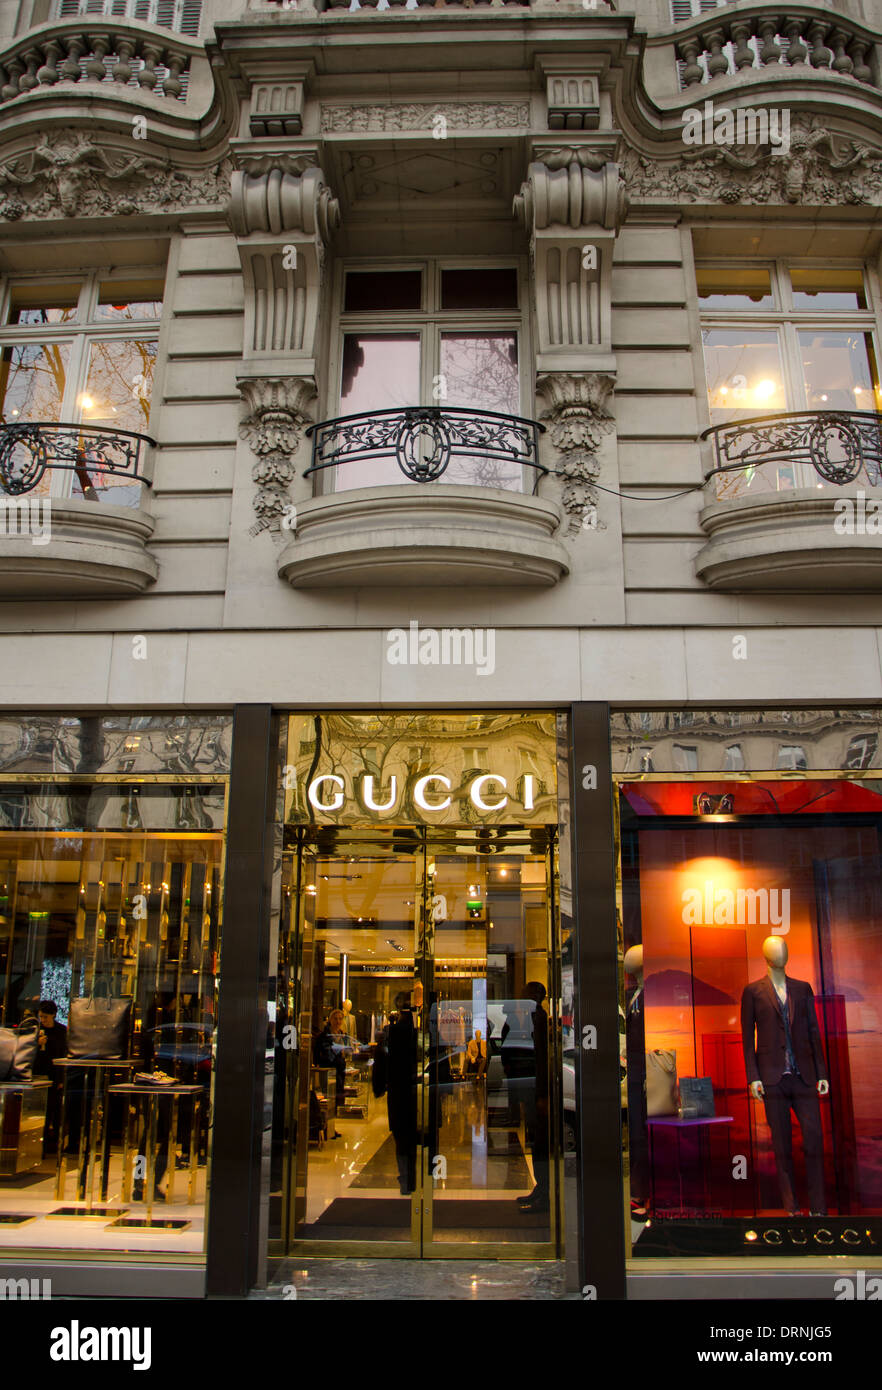 Fassade eines italienischen Mode Gucci Stores, Shop in Paris Frankreich  Stockfotografie - Alamy